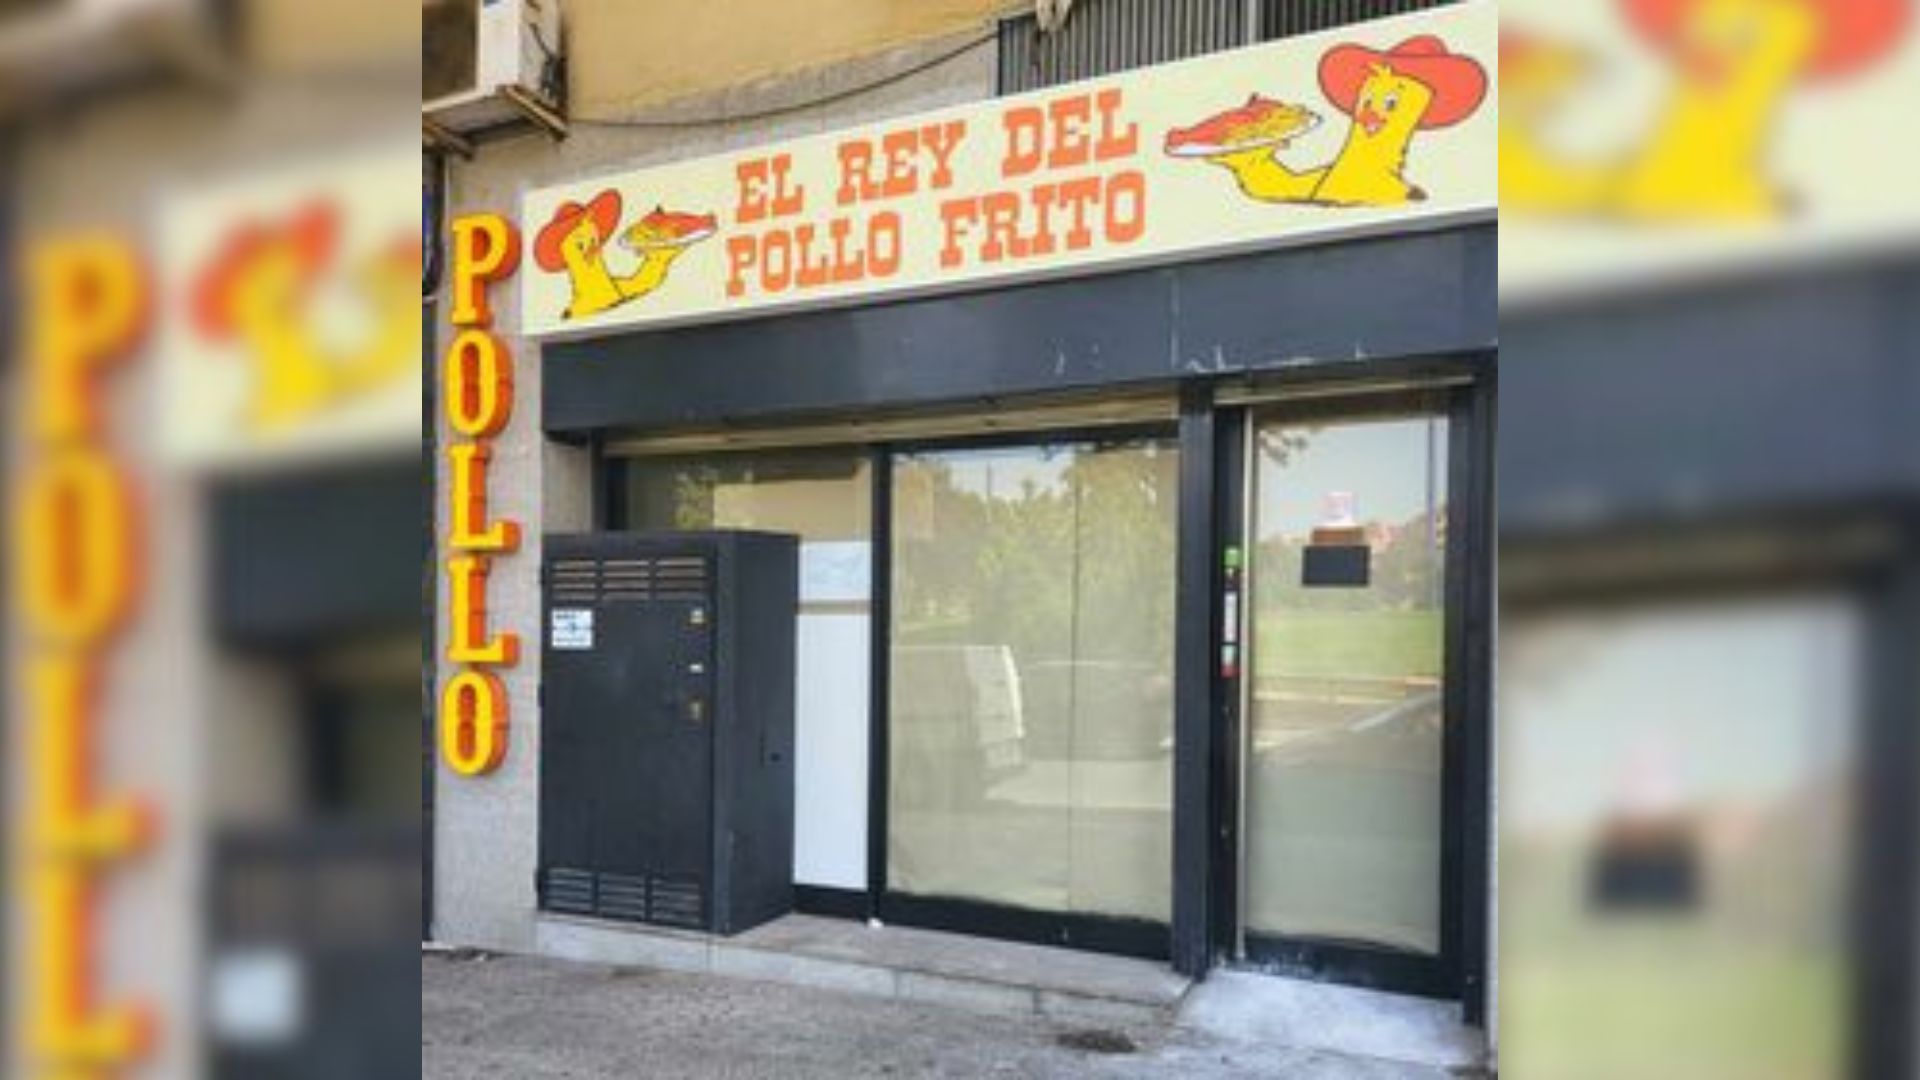 La receta del pollo caporal continuará en un nuevo establecimiento en Algeciras